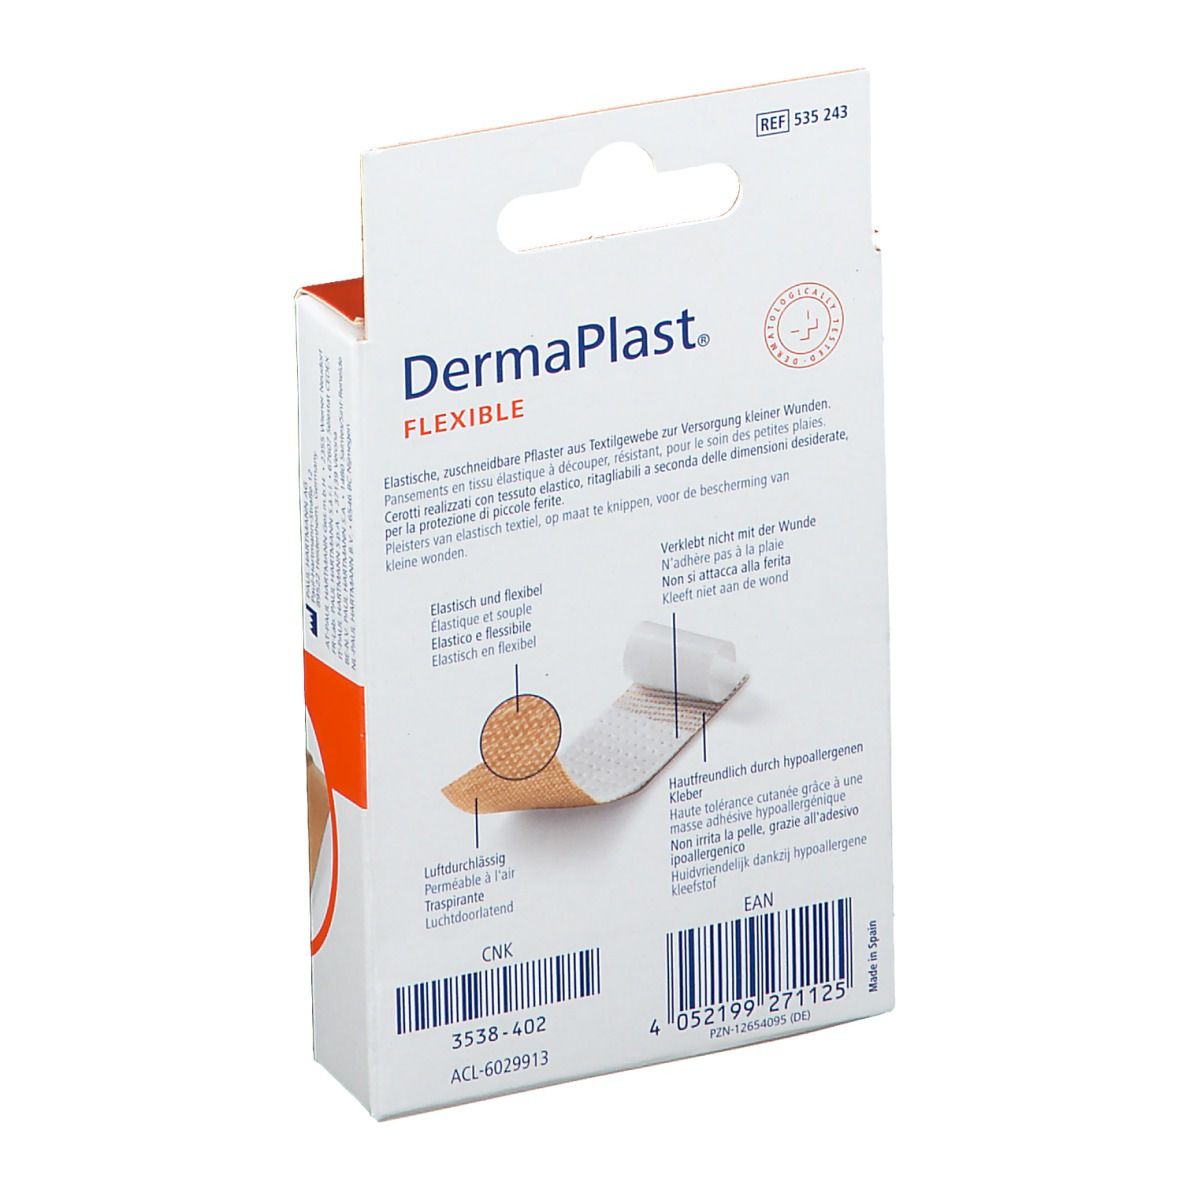 DermaPlast® FLEXIBLE Wundpflaster 6 cm x 10 cm